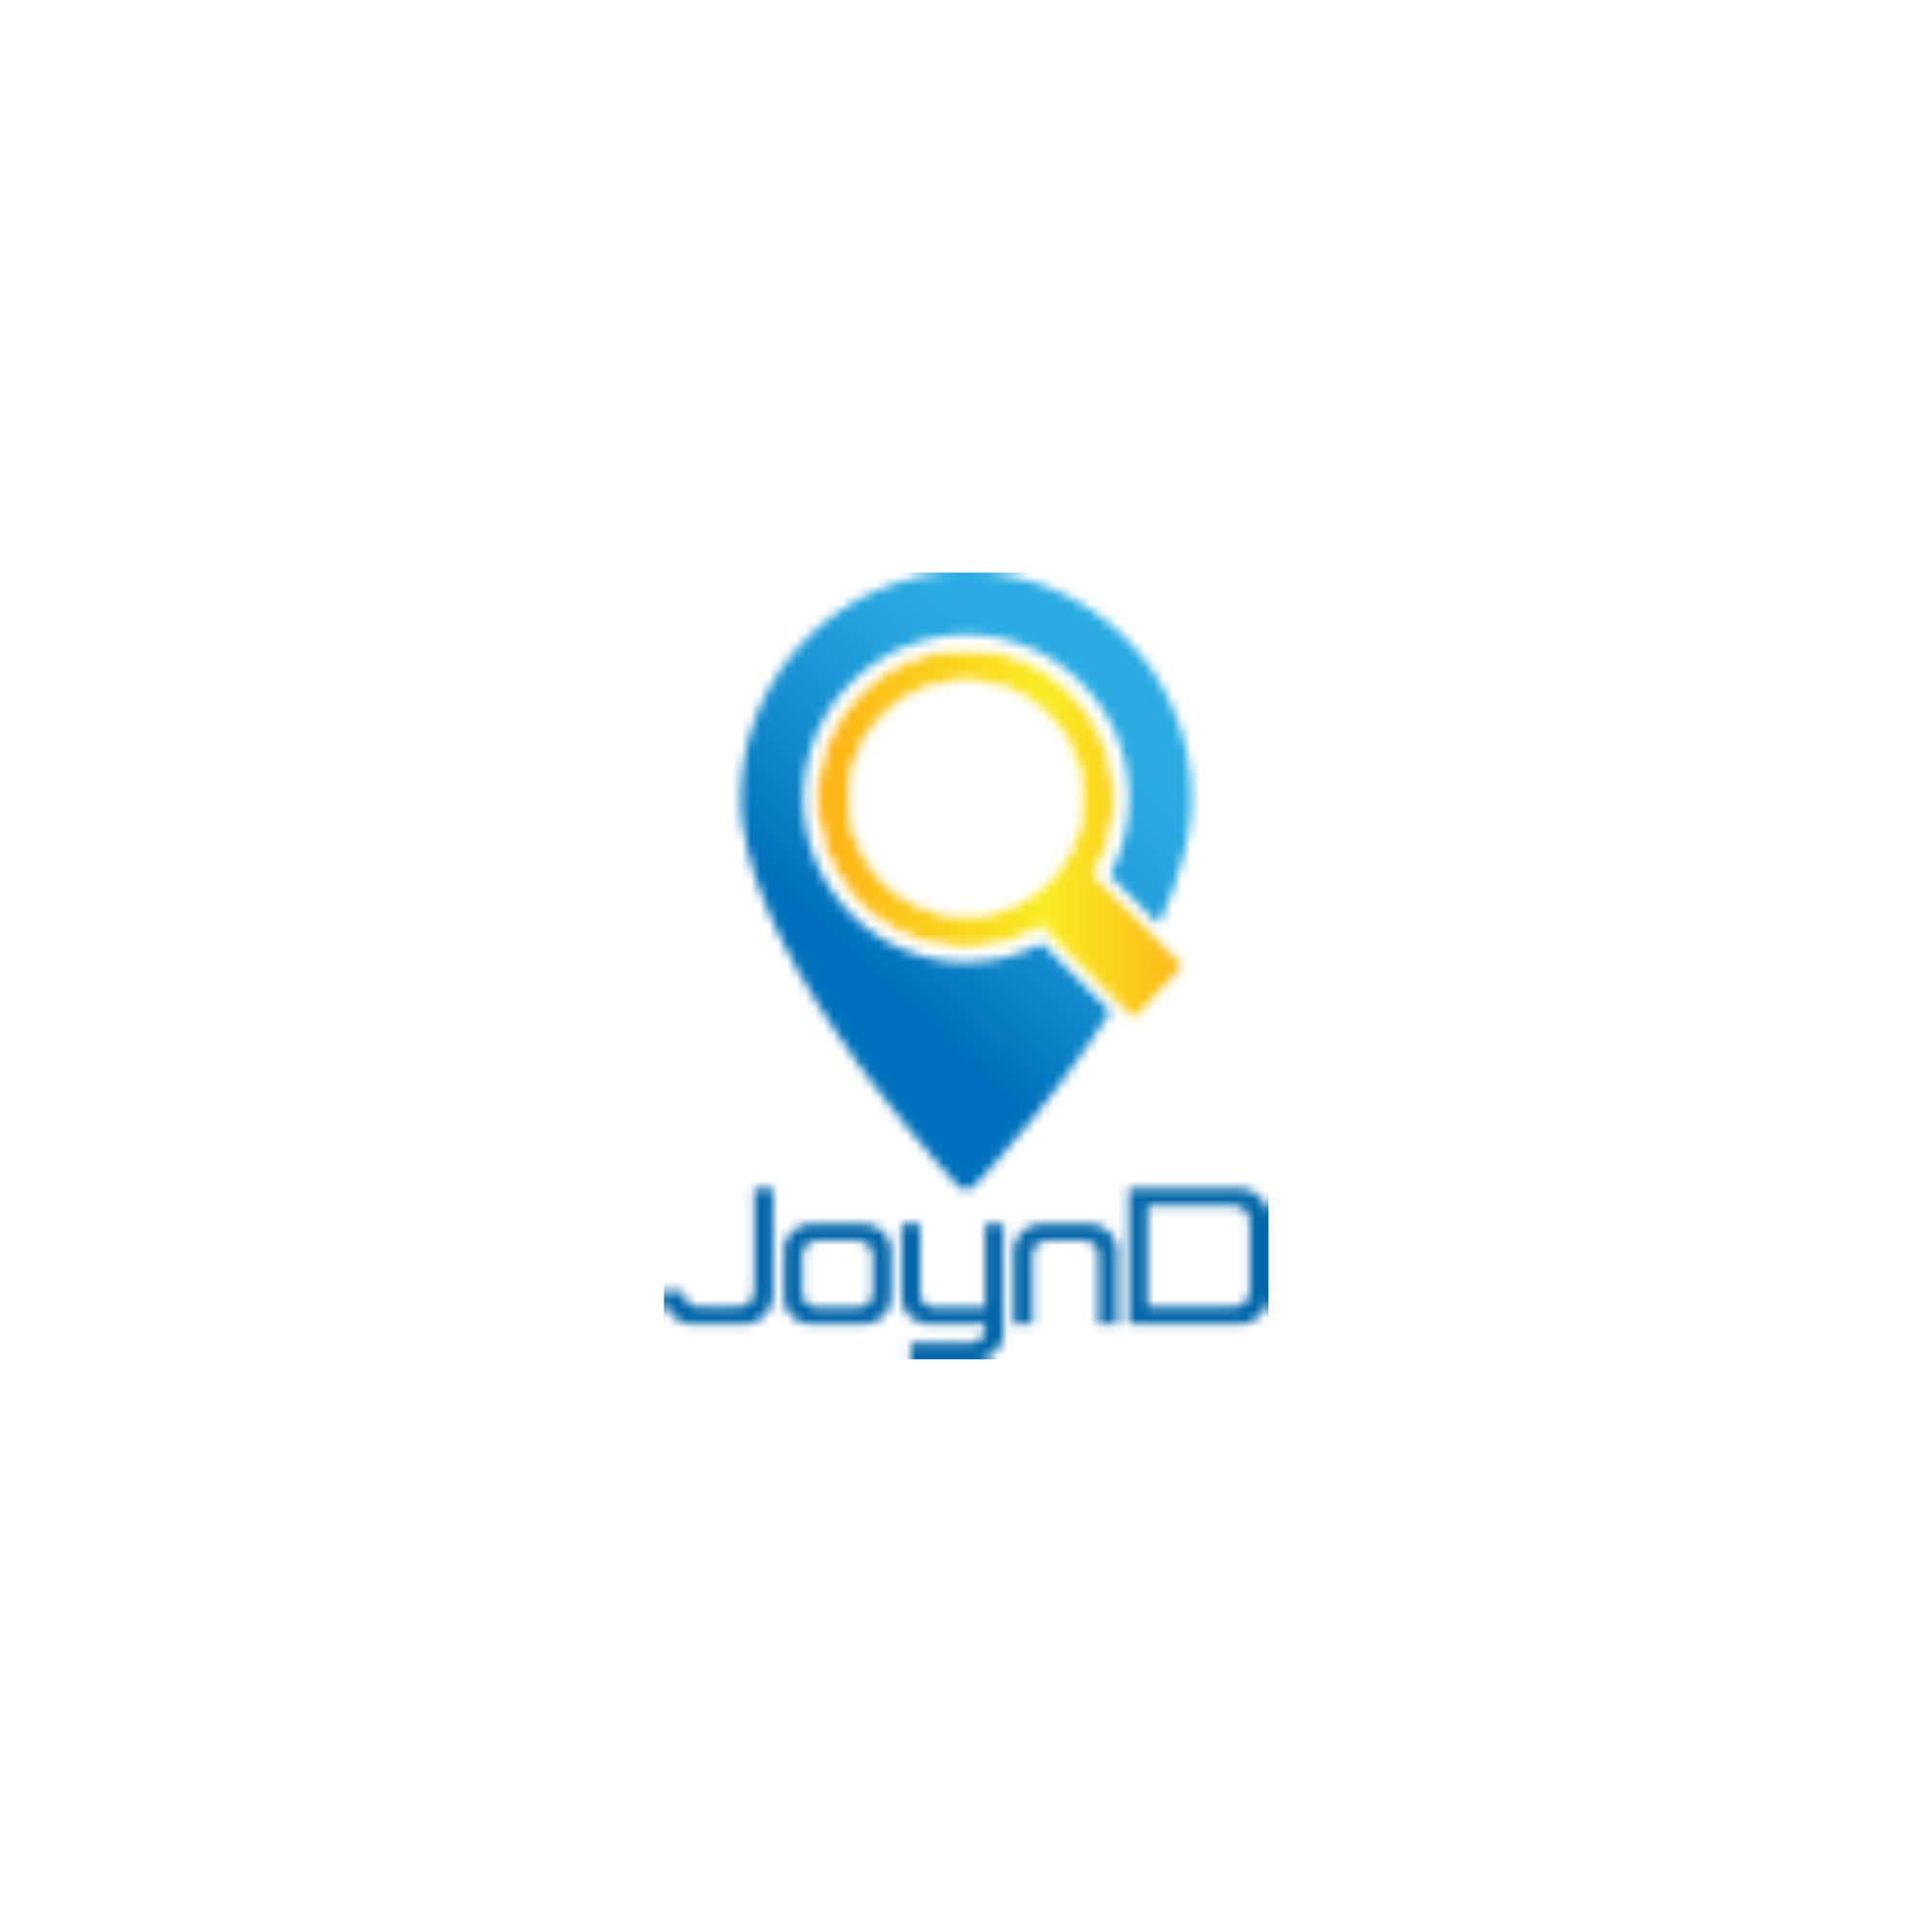 Joybos - Crunchbase Company Profile & Funding